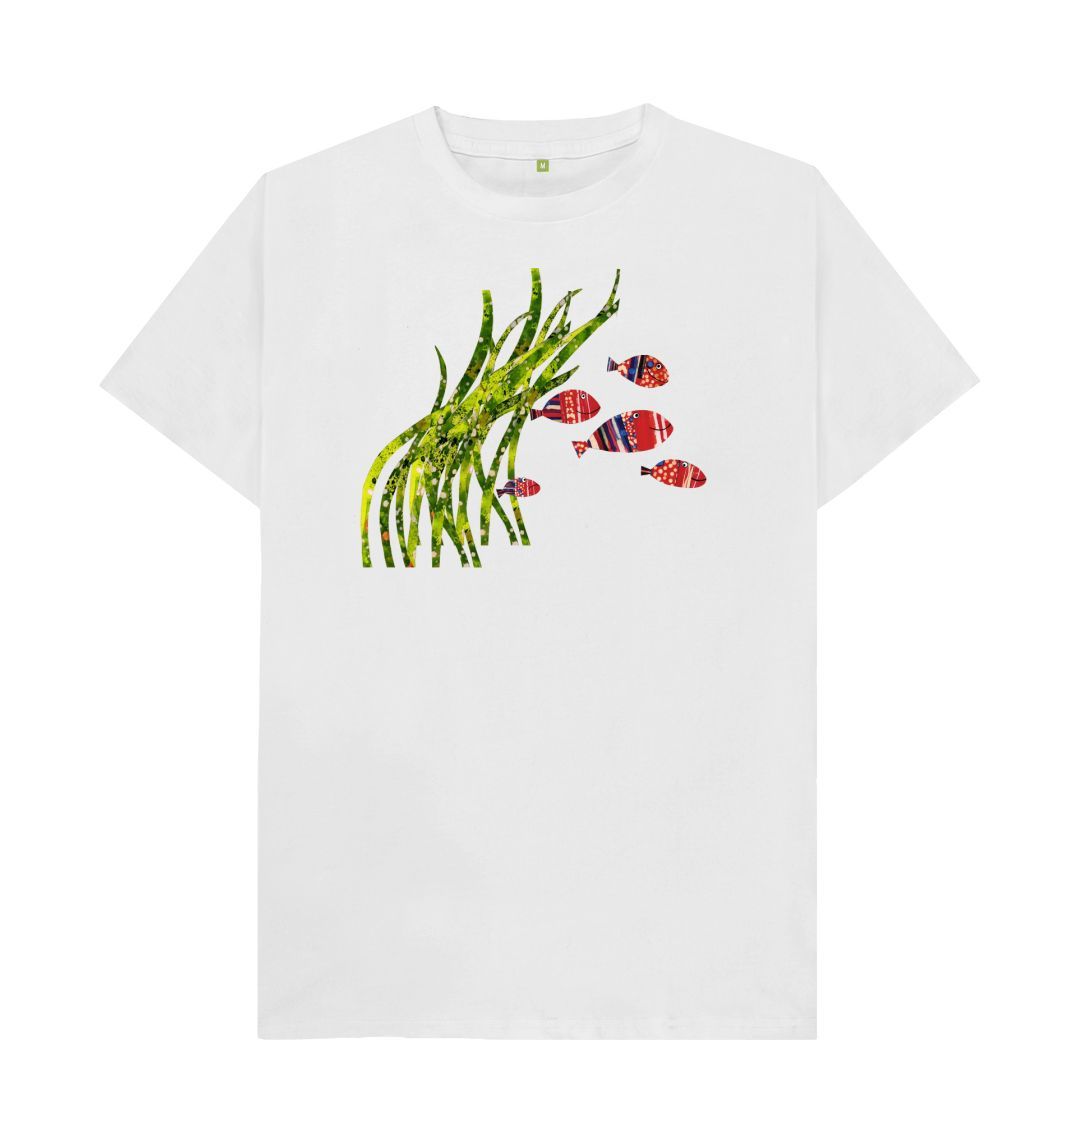 shoal days organic men's tee - Printed T-shirt - Sarah Millin